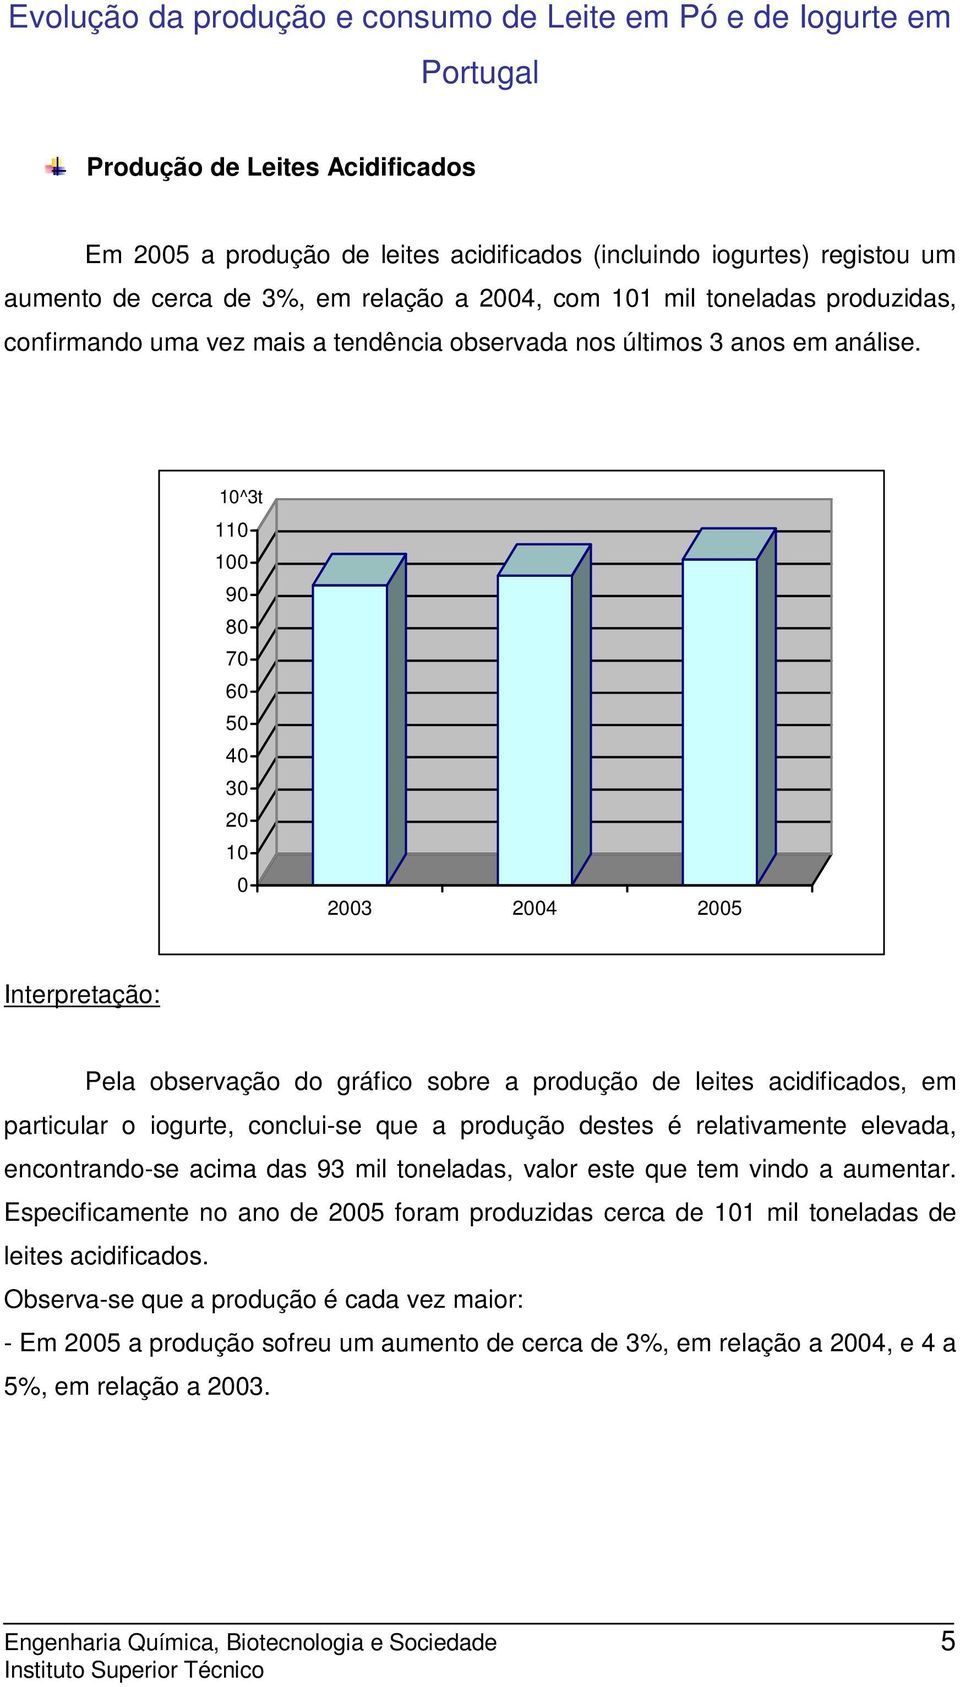 10^3t 110 100 90 80 70 60 50 40 30 20 10 0 2003 2004 2005 Interpretação: Pela observação do gráfico sobre a produção de leites acidificados, em particular o iogurte, conclui-se que a produção destes